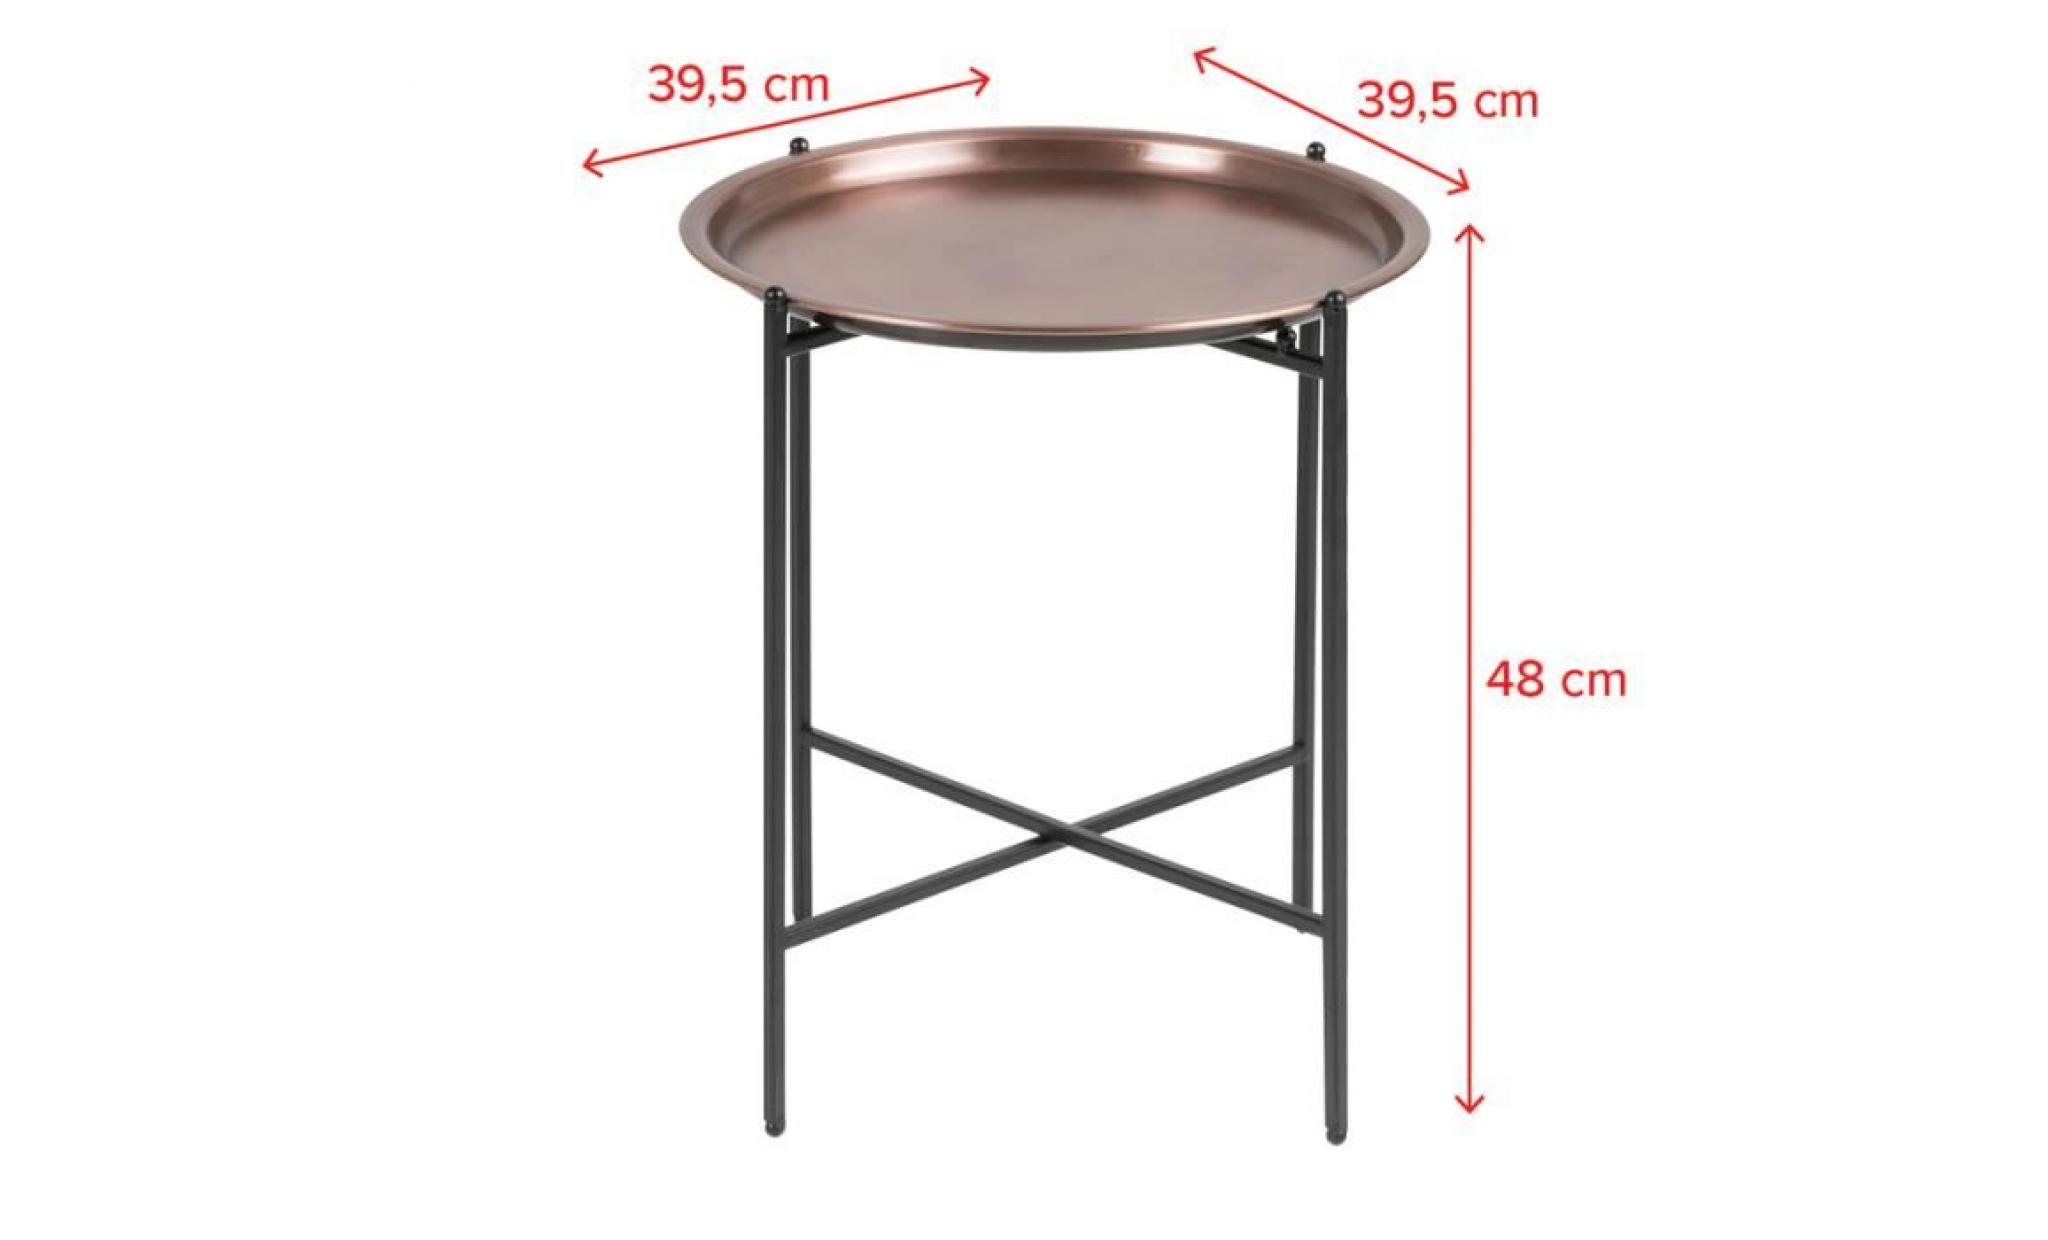 table de chevet glamour / table basse   millie   ⌀ 39,5 cm   noir / cuivre   pieds en acier   style glamour   forme minimaliste pas cher